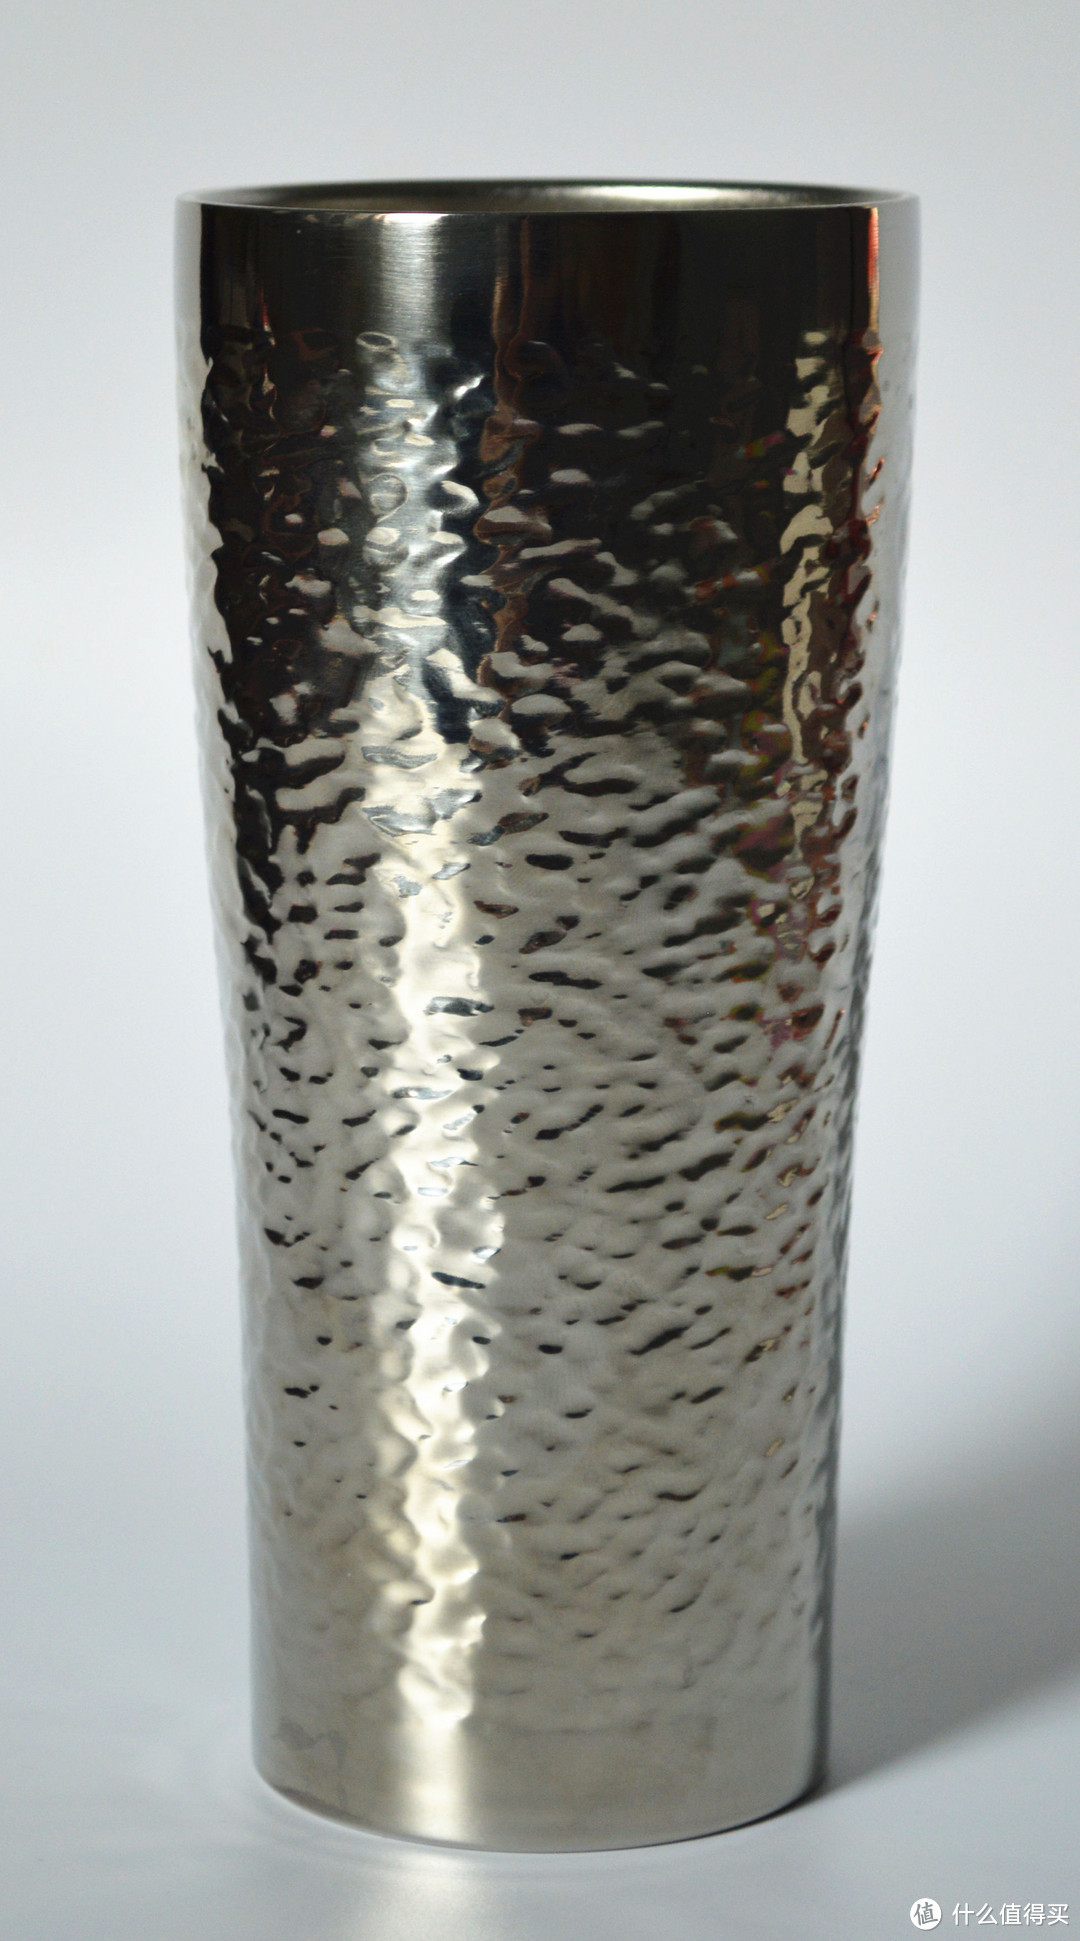 网易严选 不锈钢敞口保温杯 使用评测